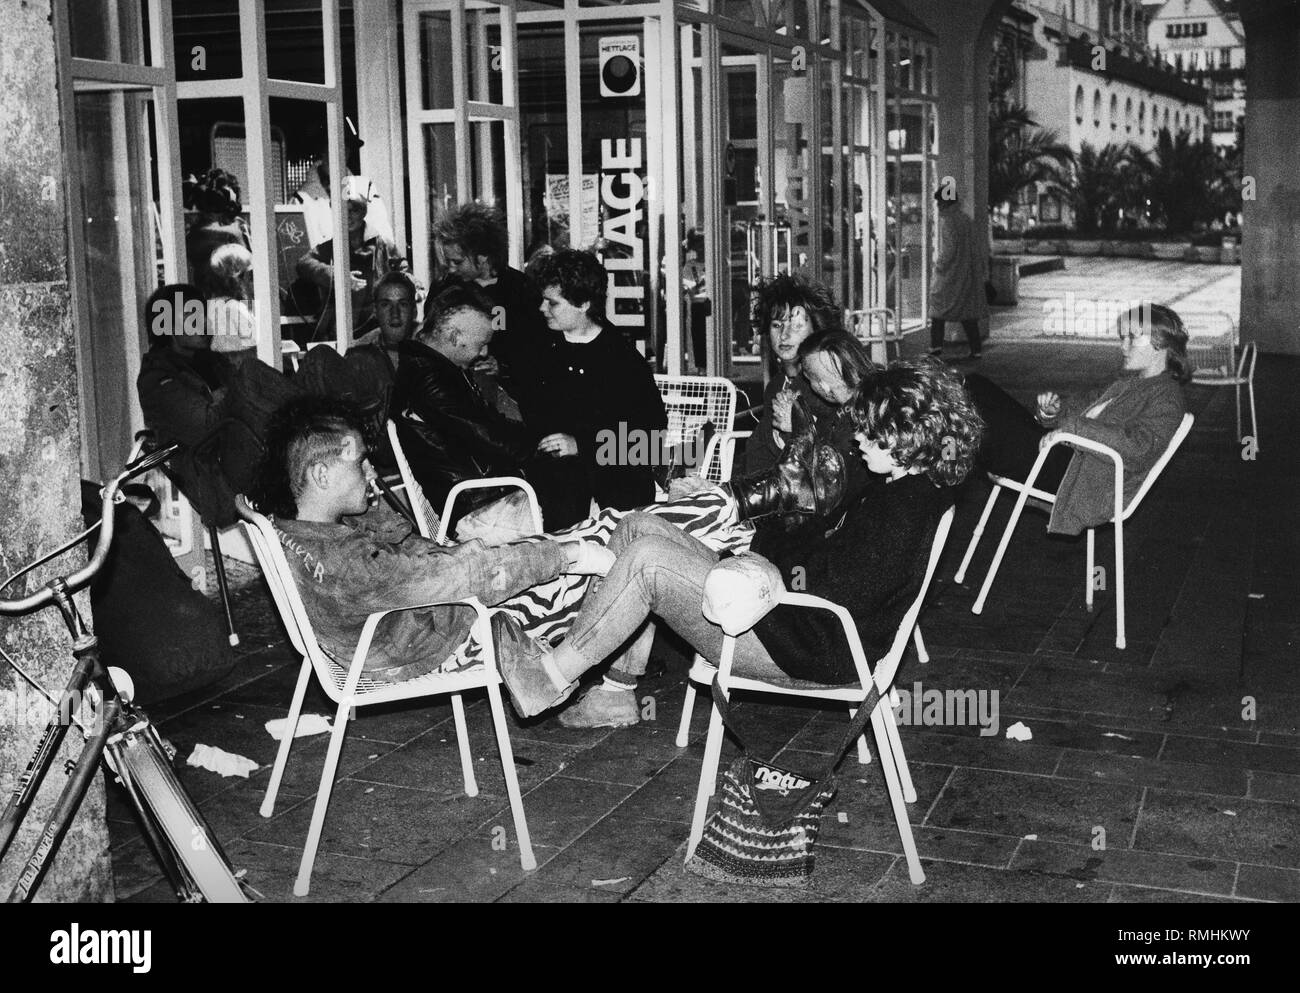 Les Punks assis sur des chaises dans une rue de Munich, octobre 1984. Banque D'Images